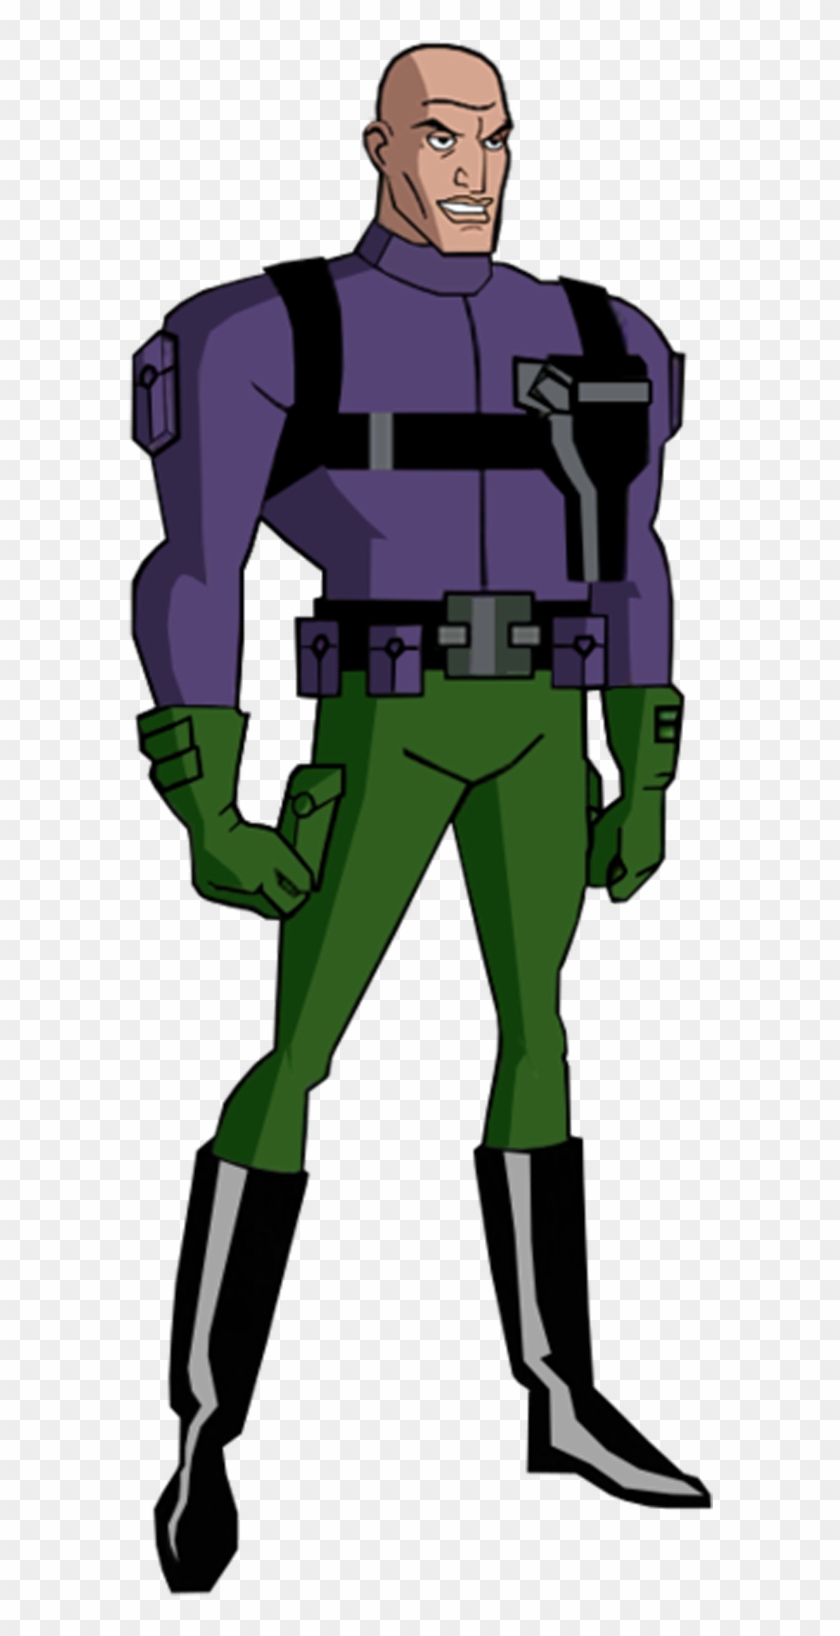 Lex Luthor Png - Justice League Unlimited Lex Luthor Clipart #2079531